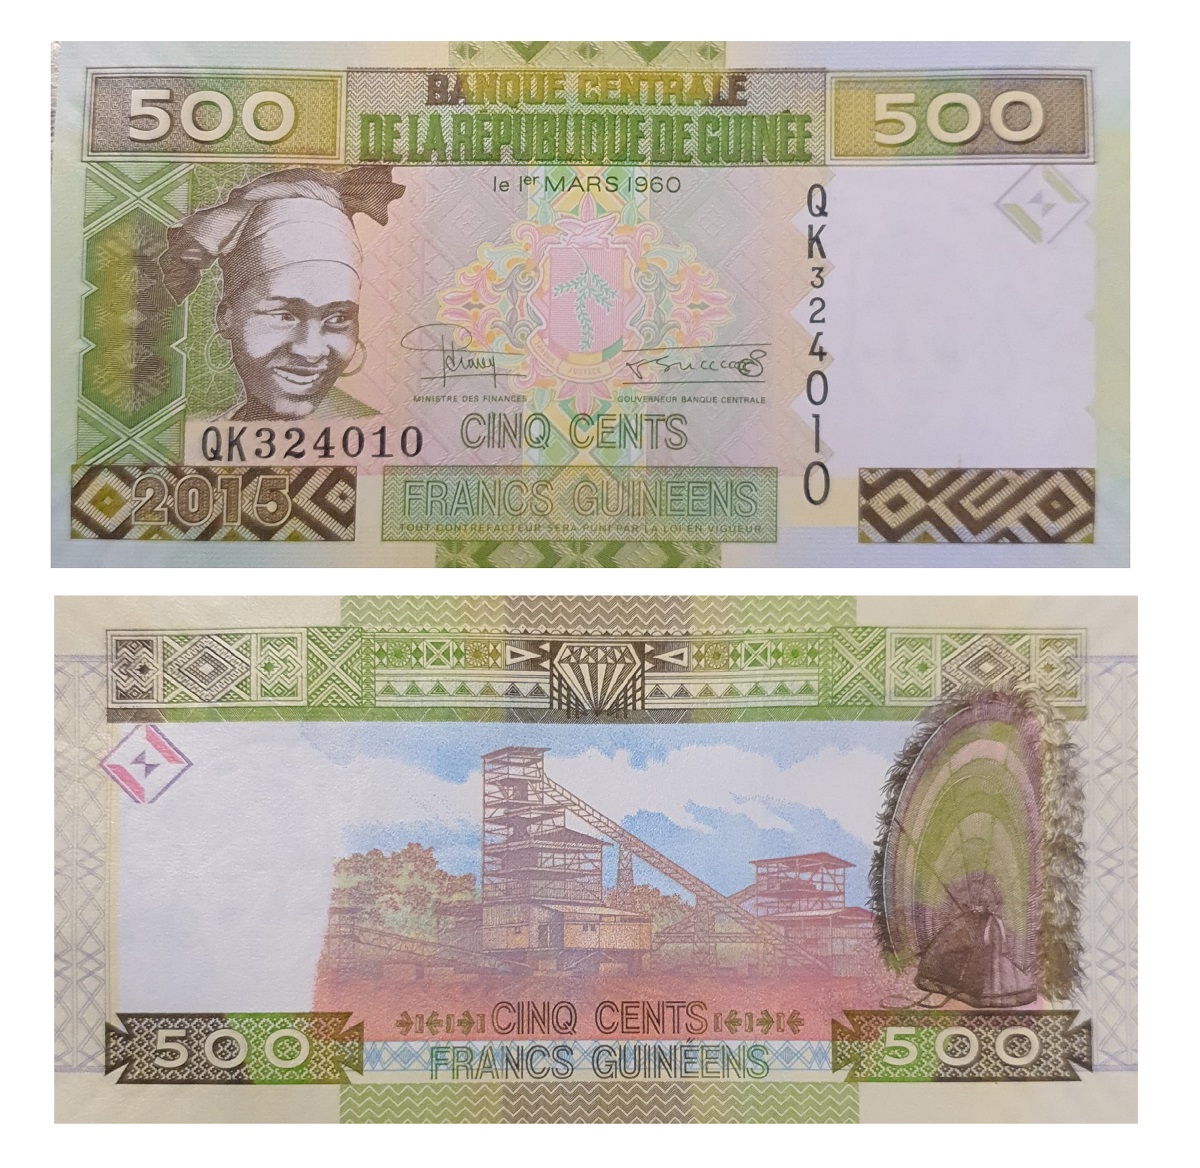 Guinea #47a  500 Francs Guinéens